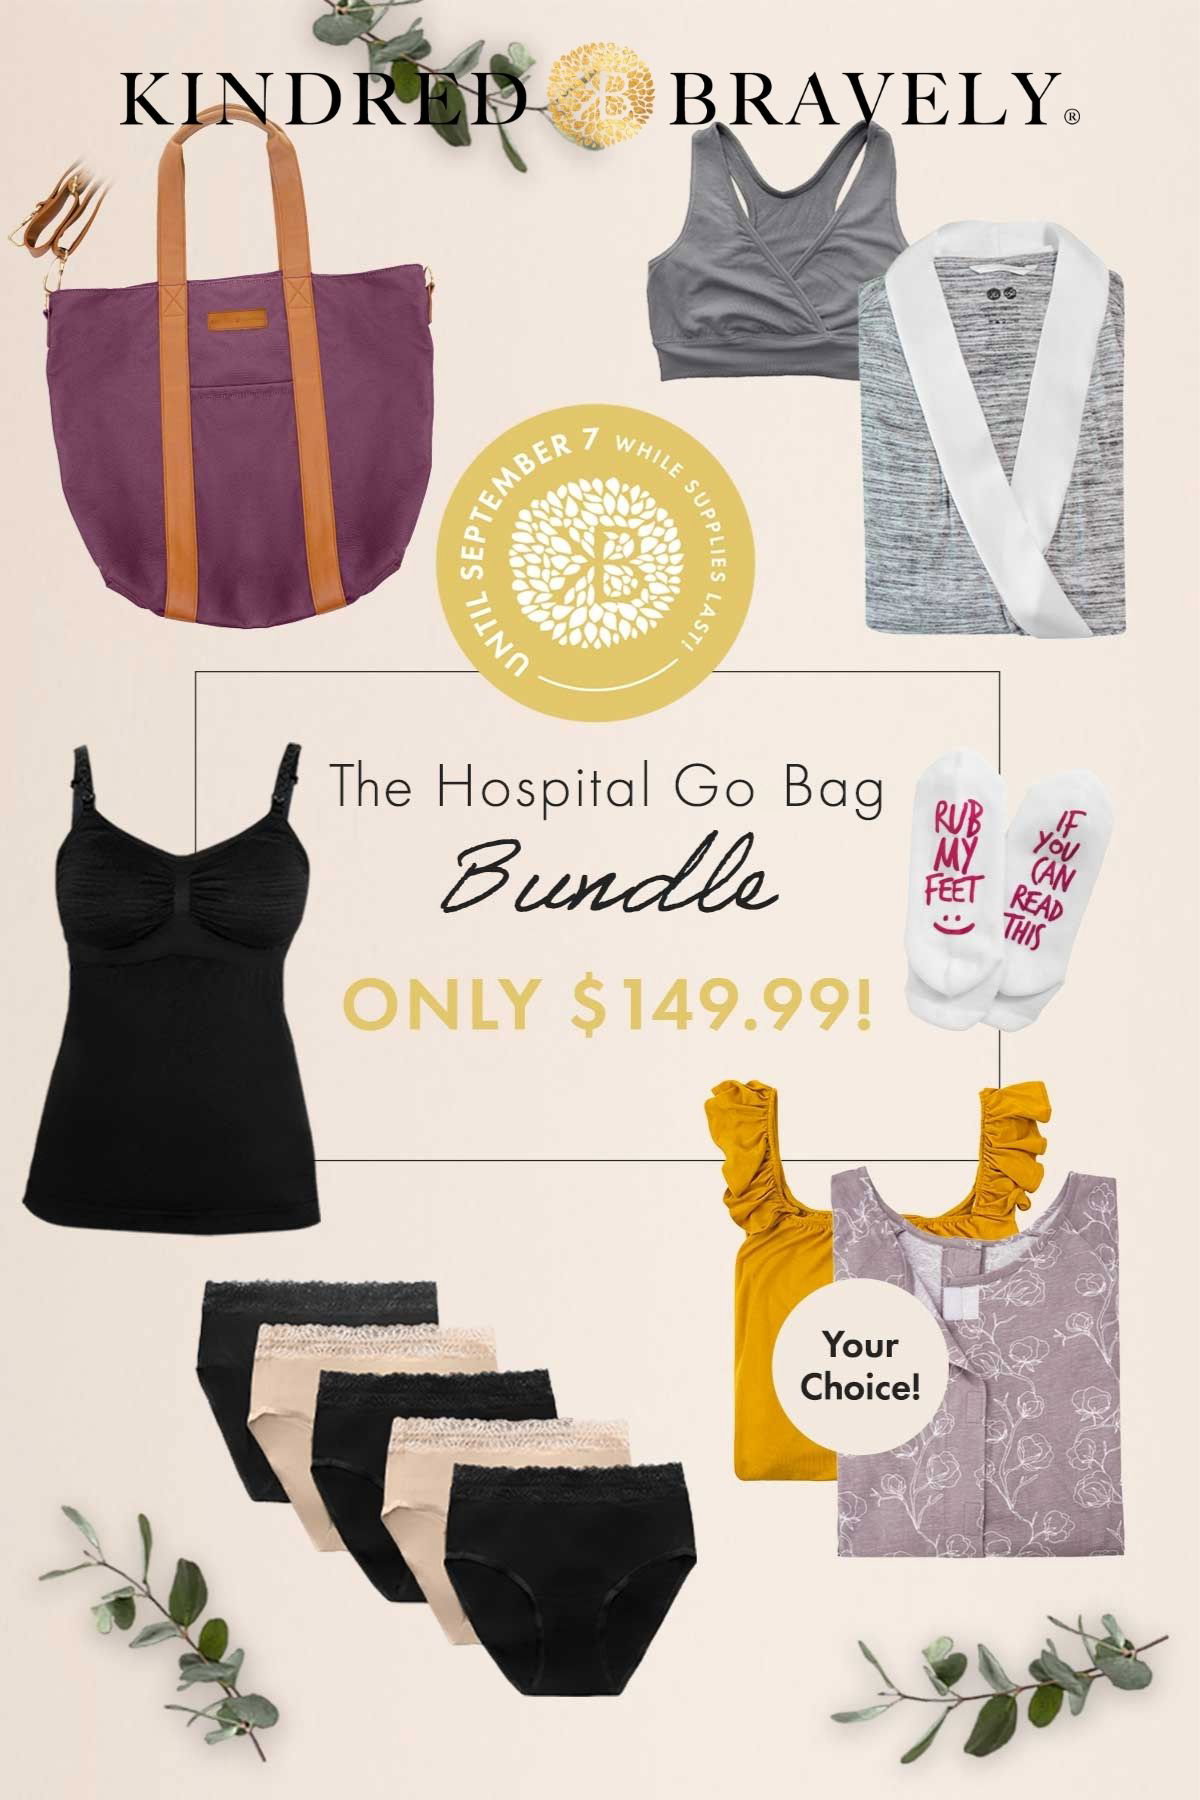 kindredbravely: Save over $100 on the Hospital Go Bag Bundle!